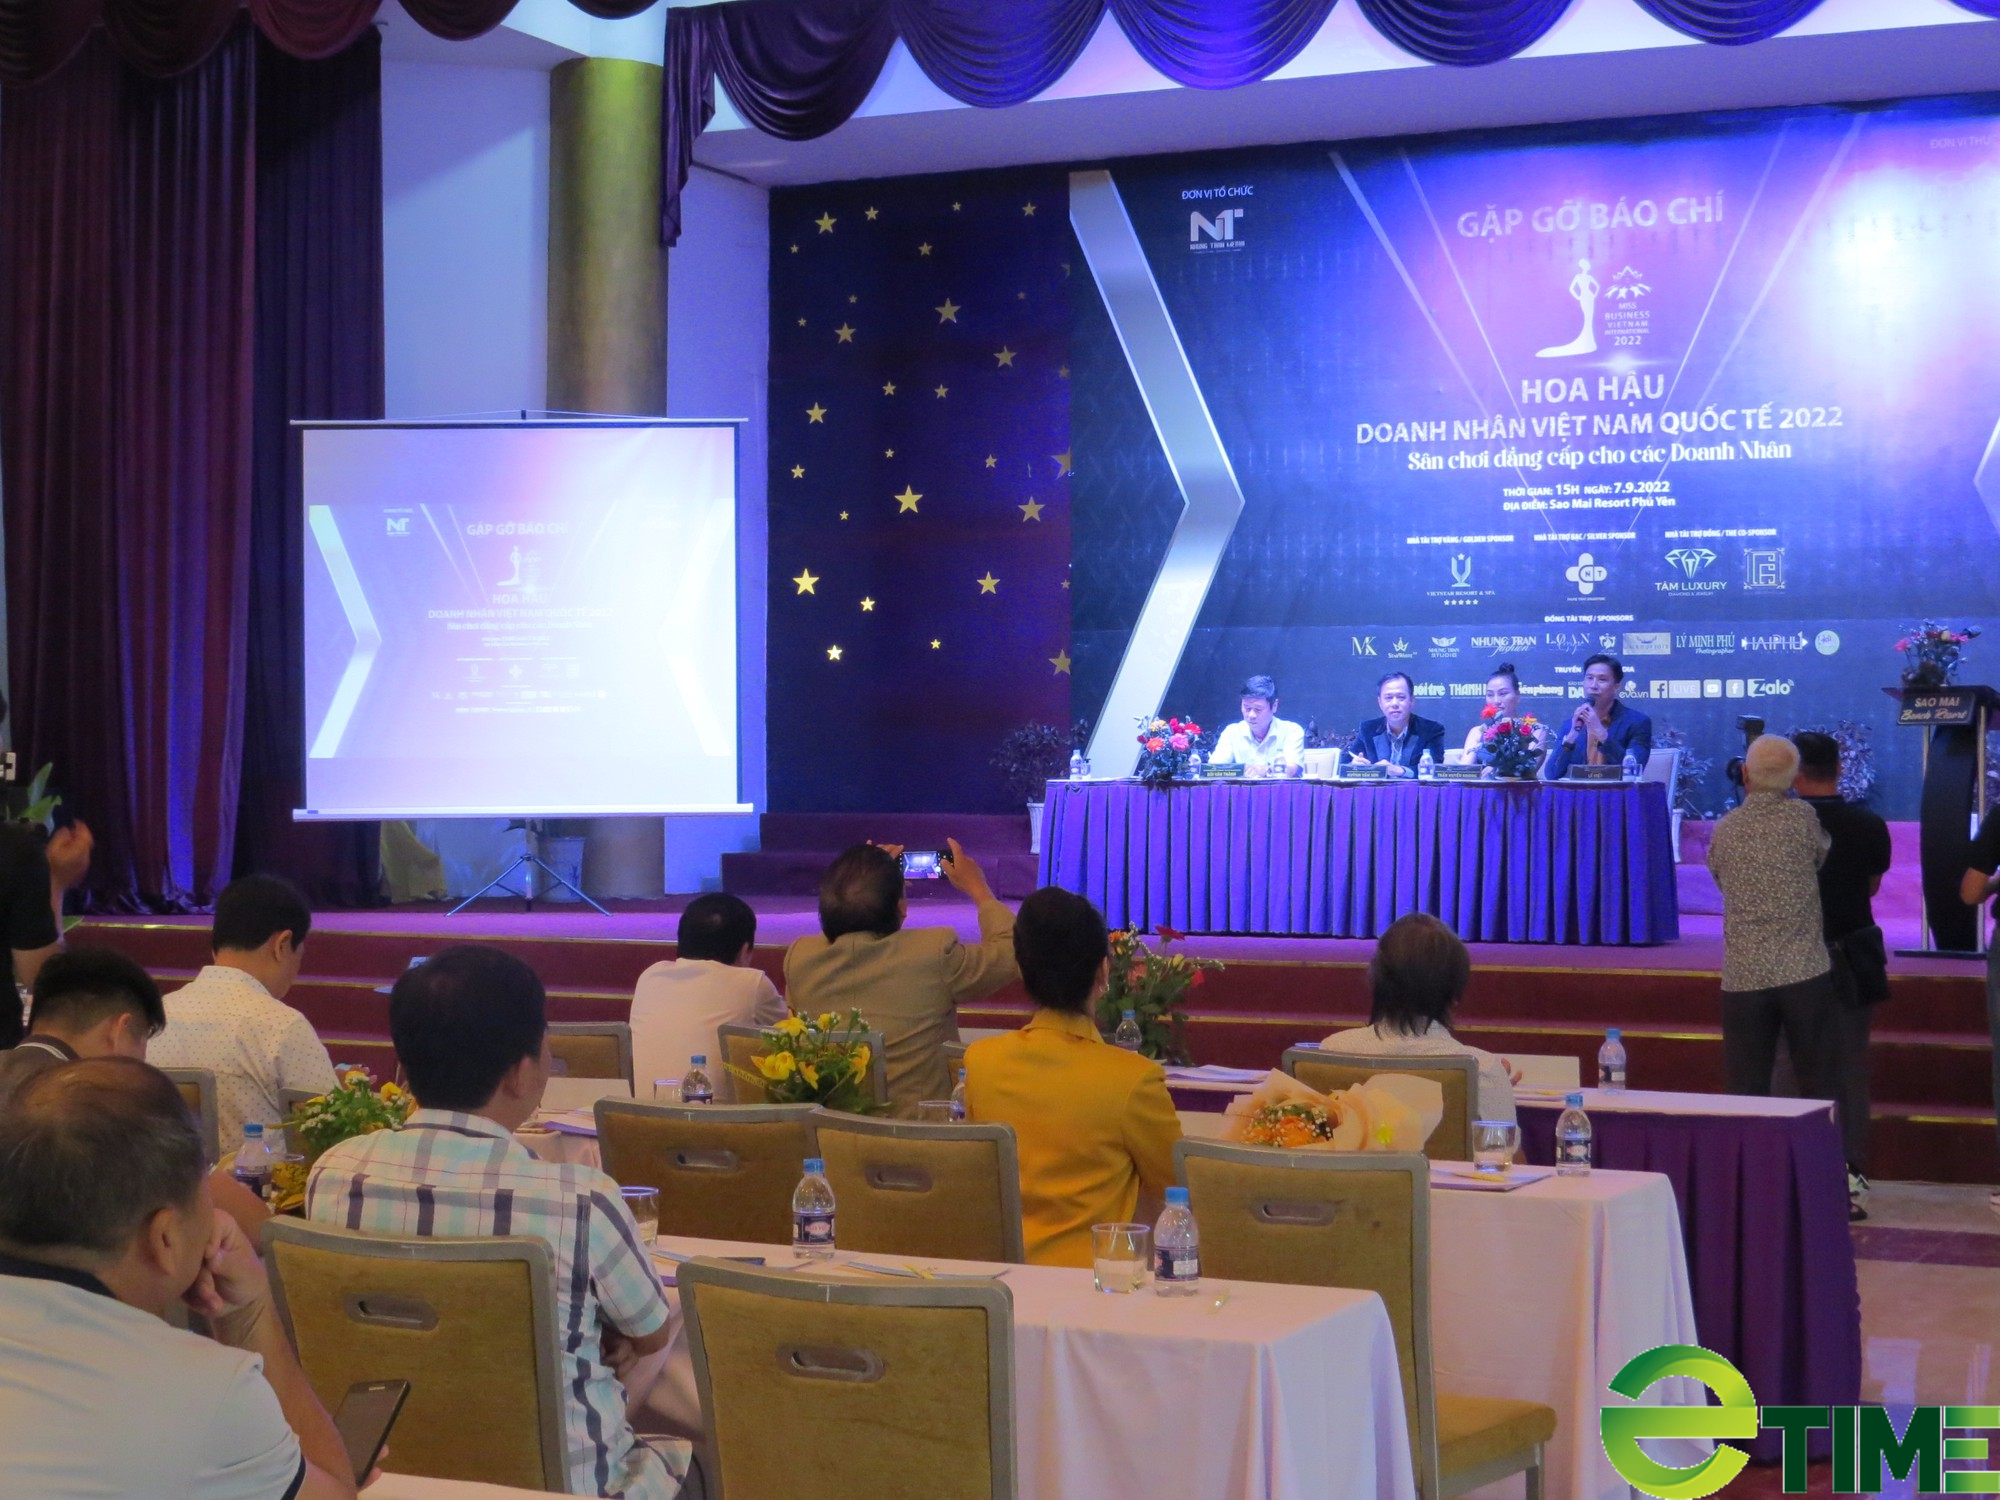 Chung kết cuộc thi Hoa hậu Doanh nhân Việt Nam Quốc tế 2022 diễn ra tại Phú Yên đêm 25/9 - Ảnh 1.